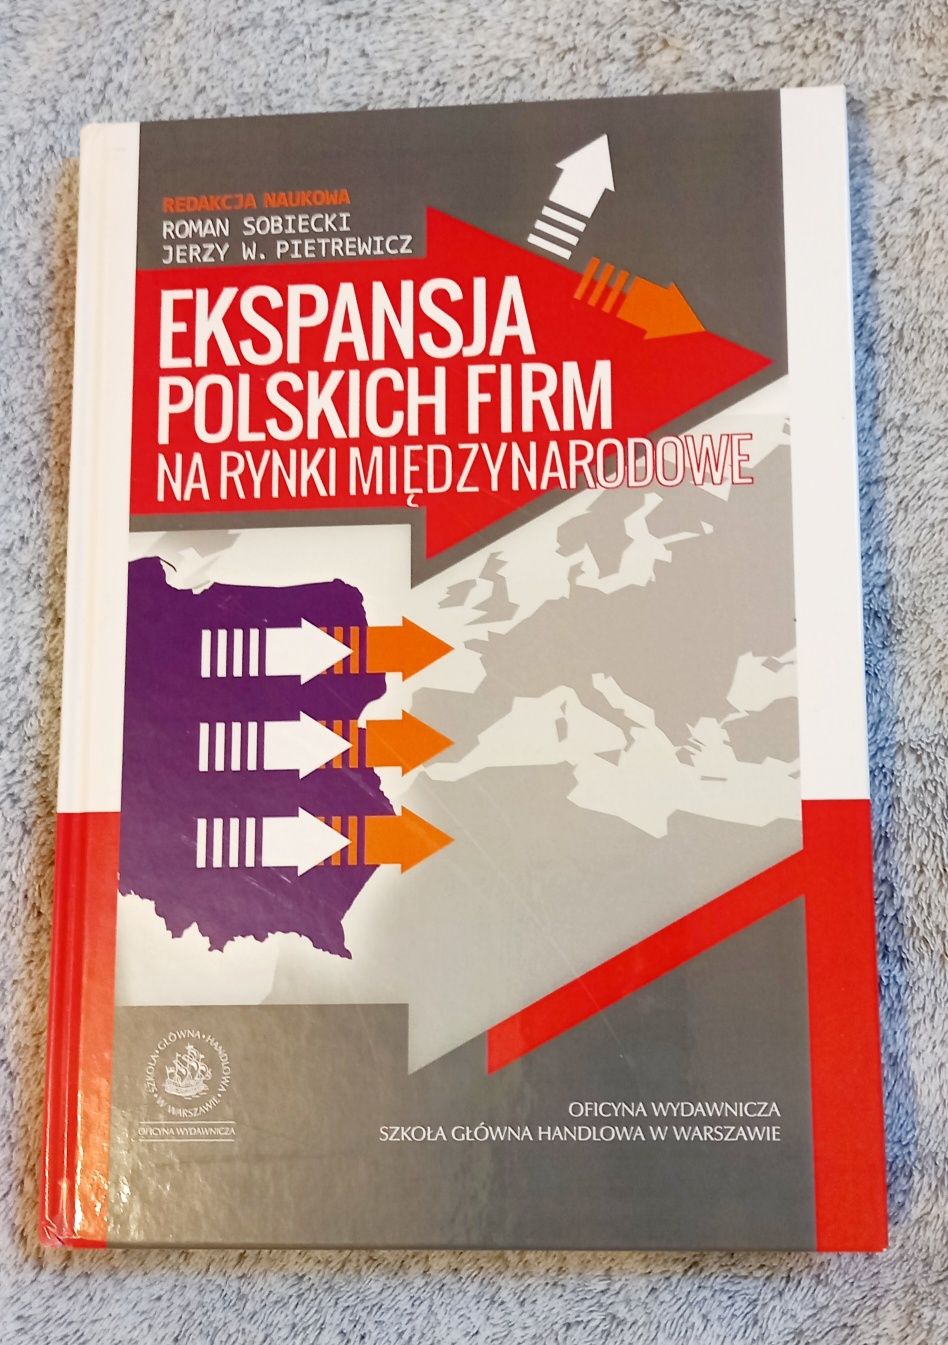 Ekspansja polskich firm na tynki międzynarodowe